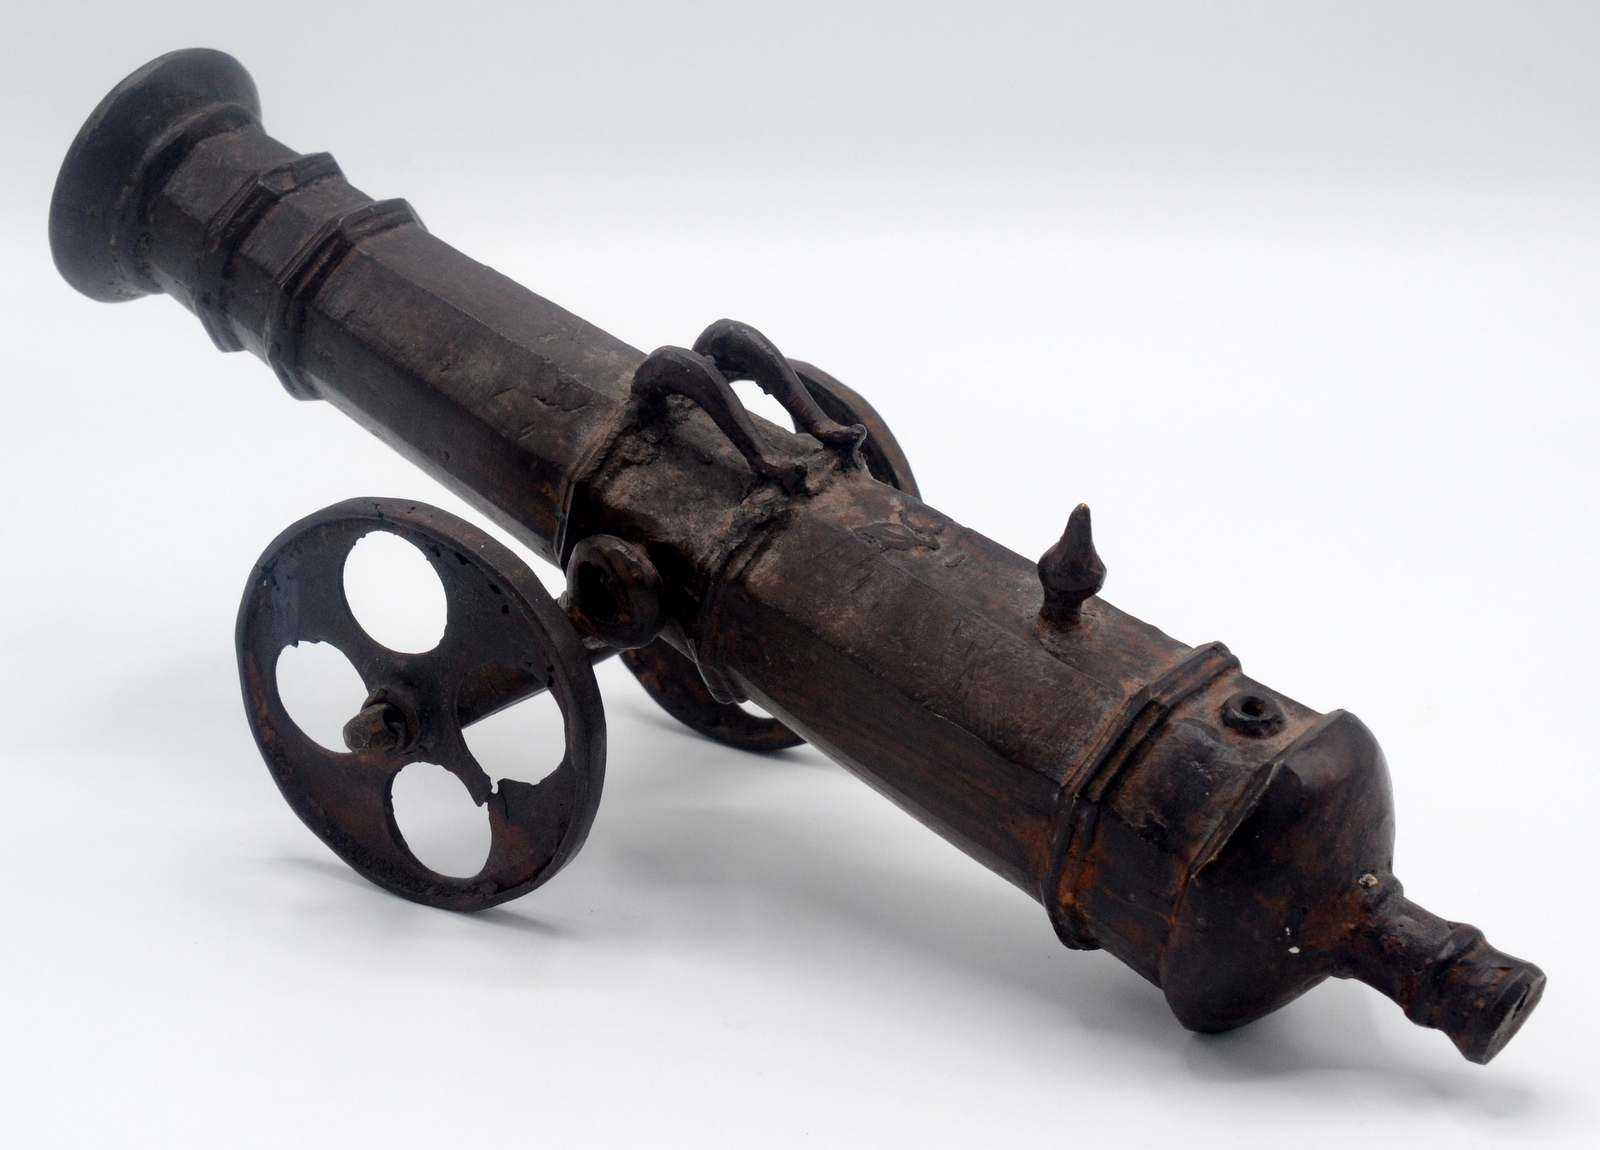 A Lantaka metal model of a cannon, length 30cm.